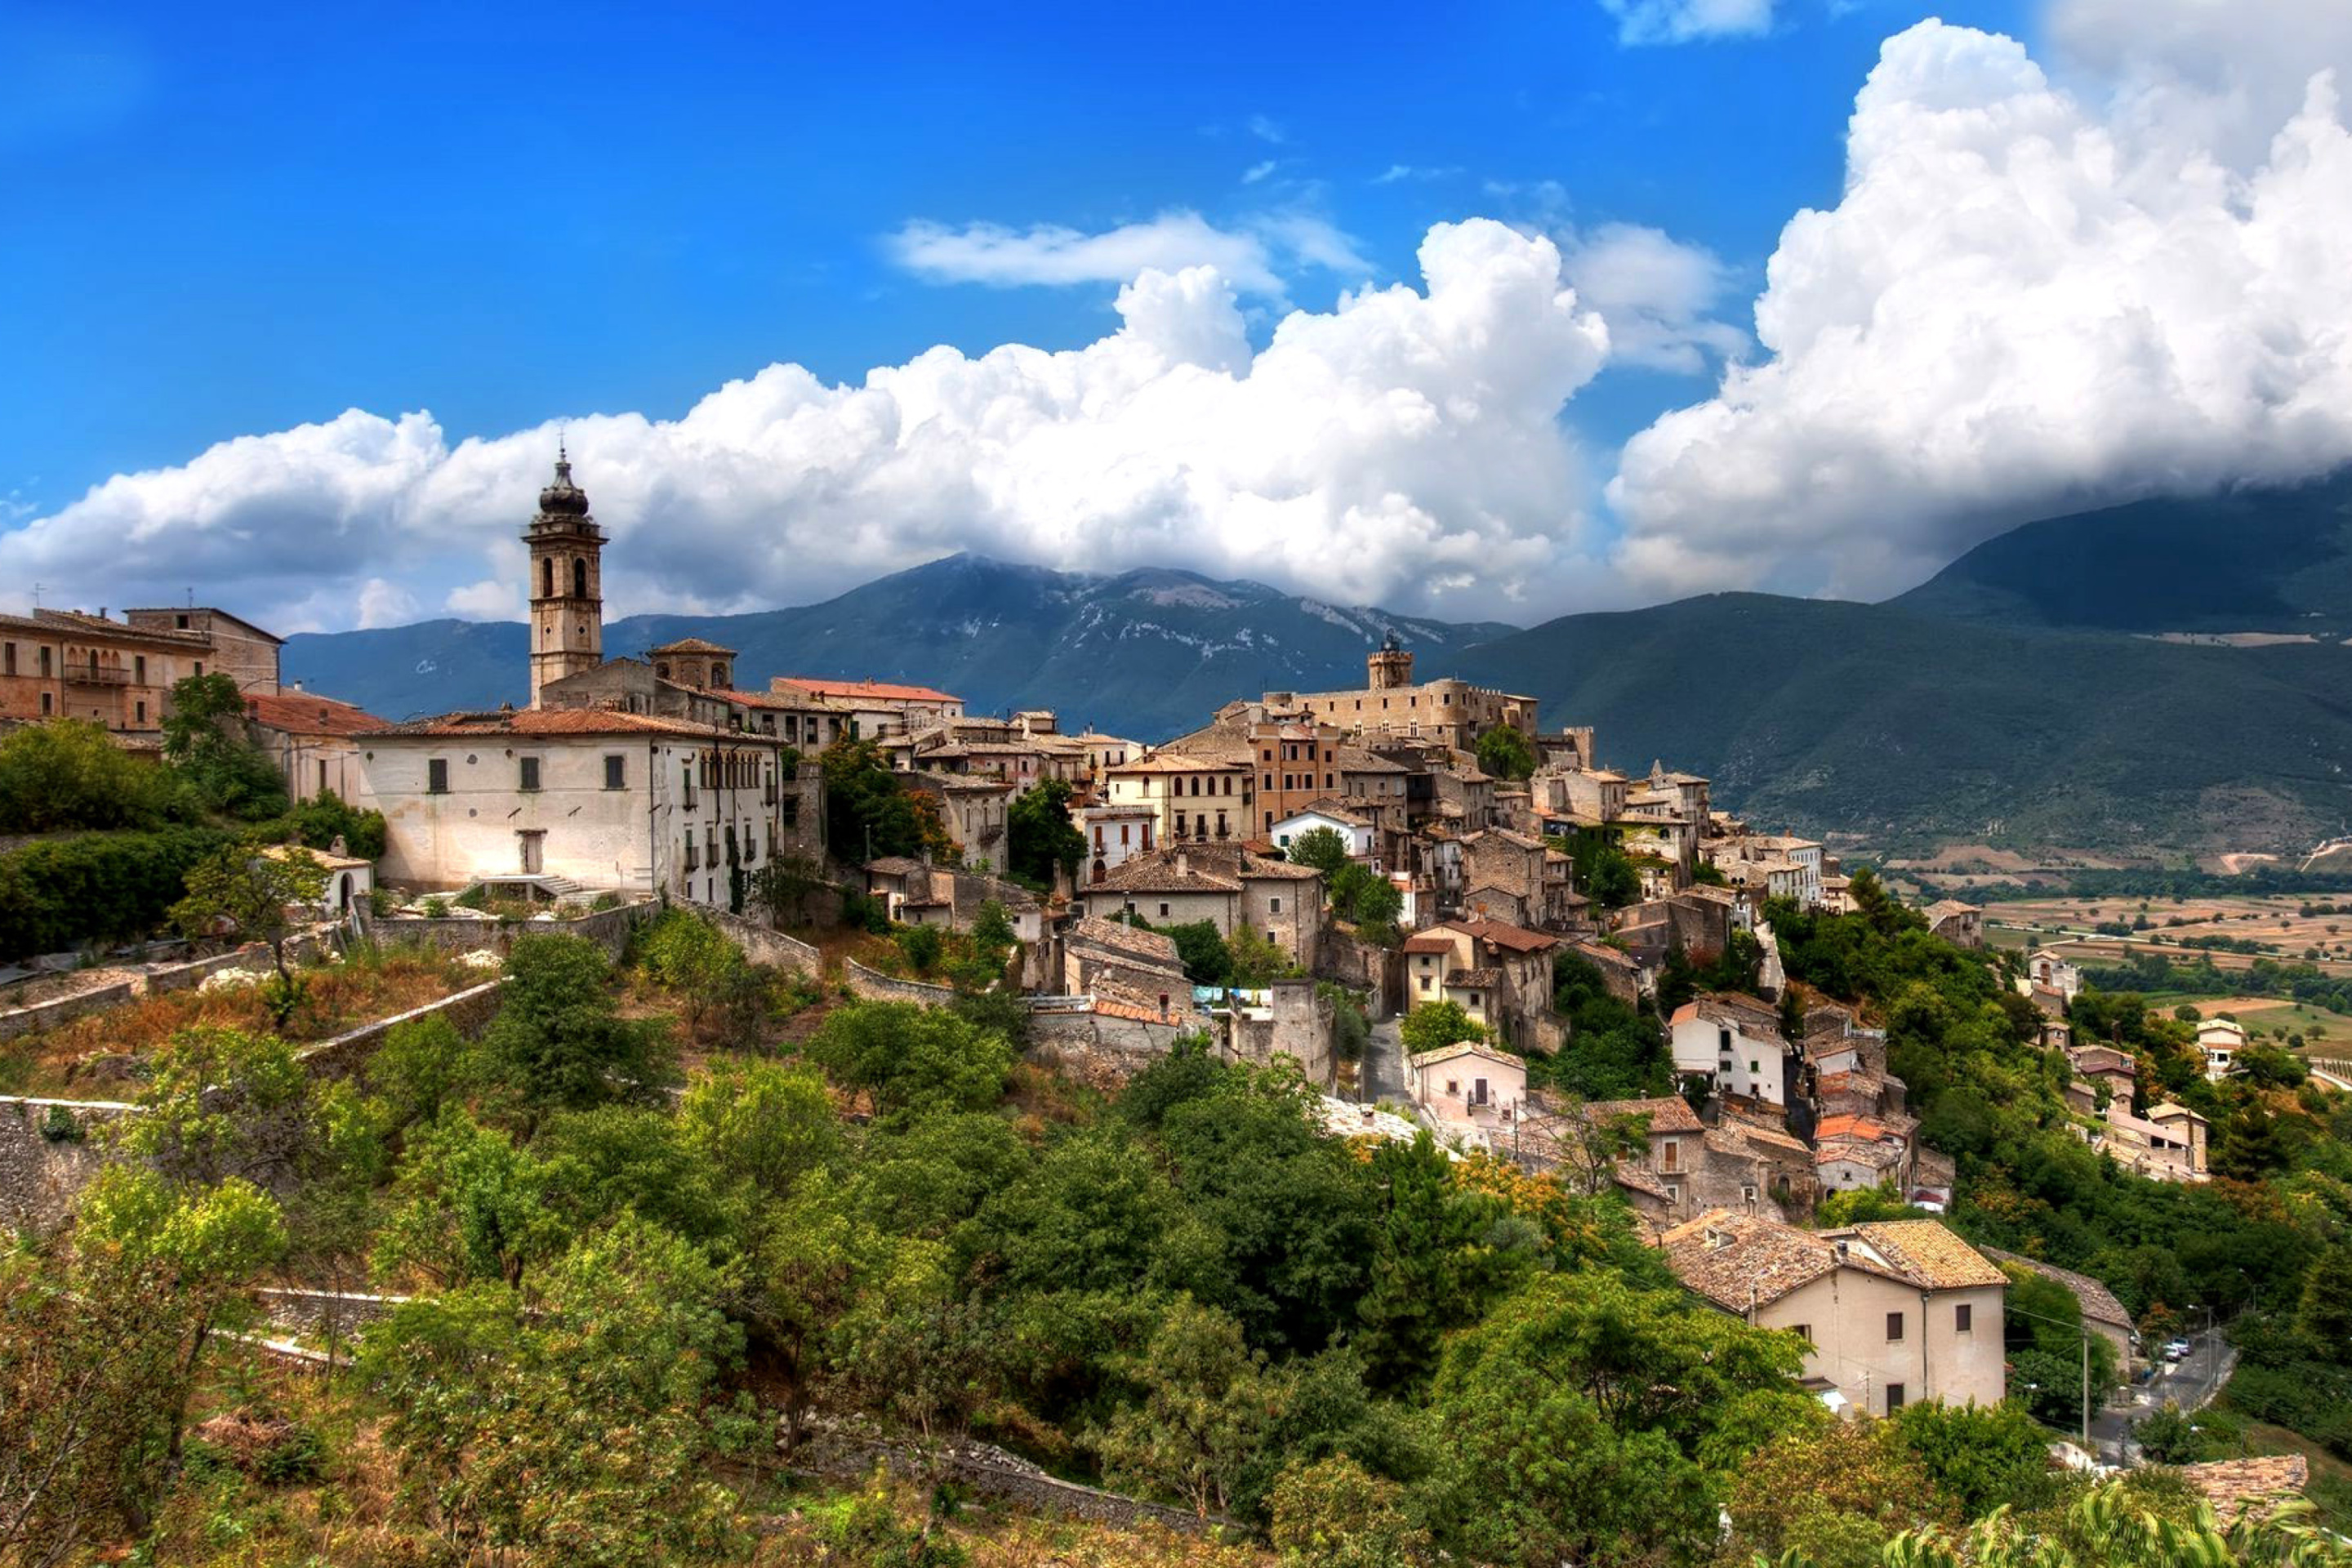 Capestrano Comune in Abruzzo screenshot #1 2880x1920